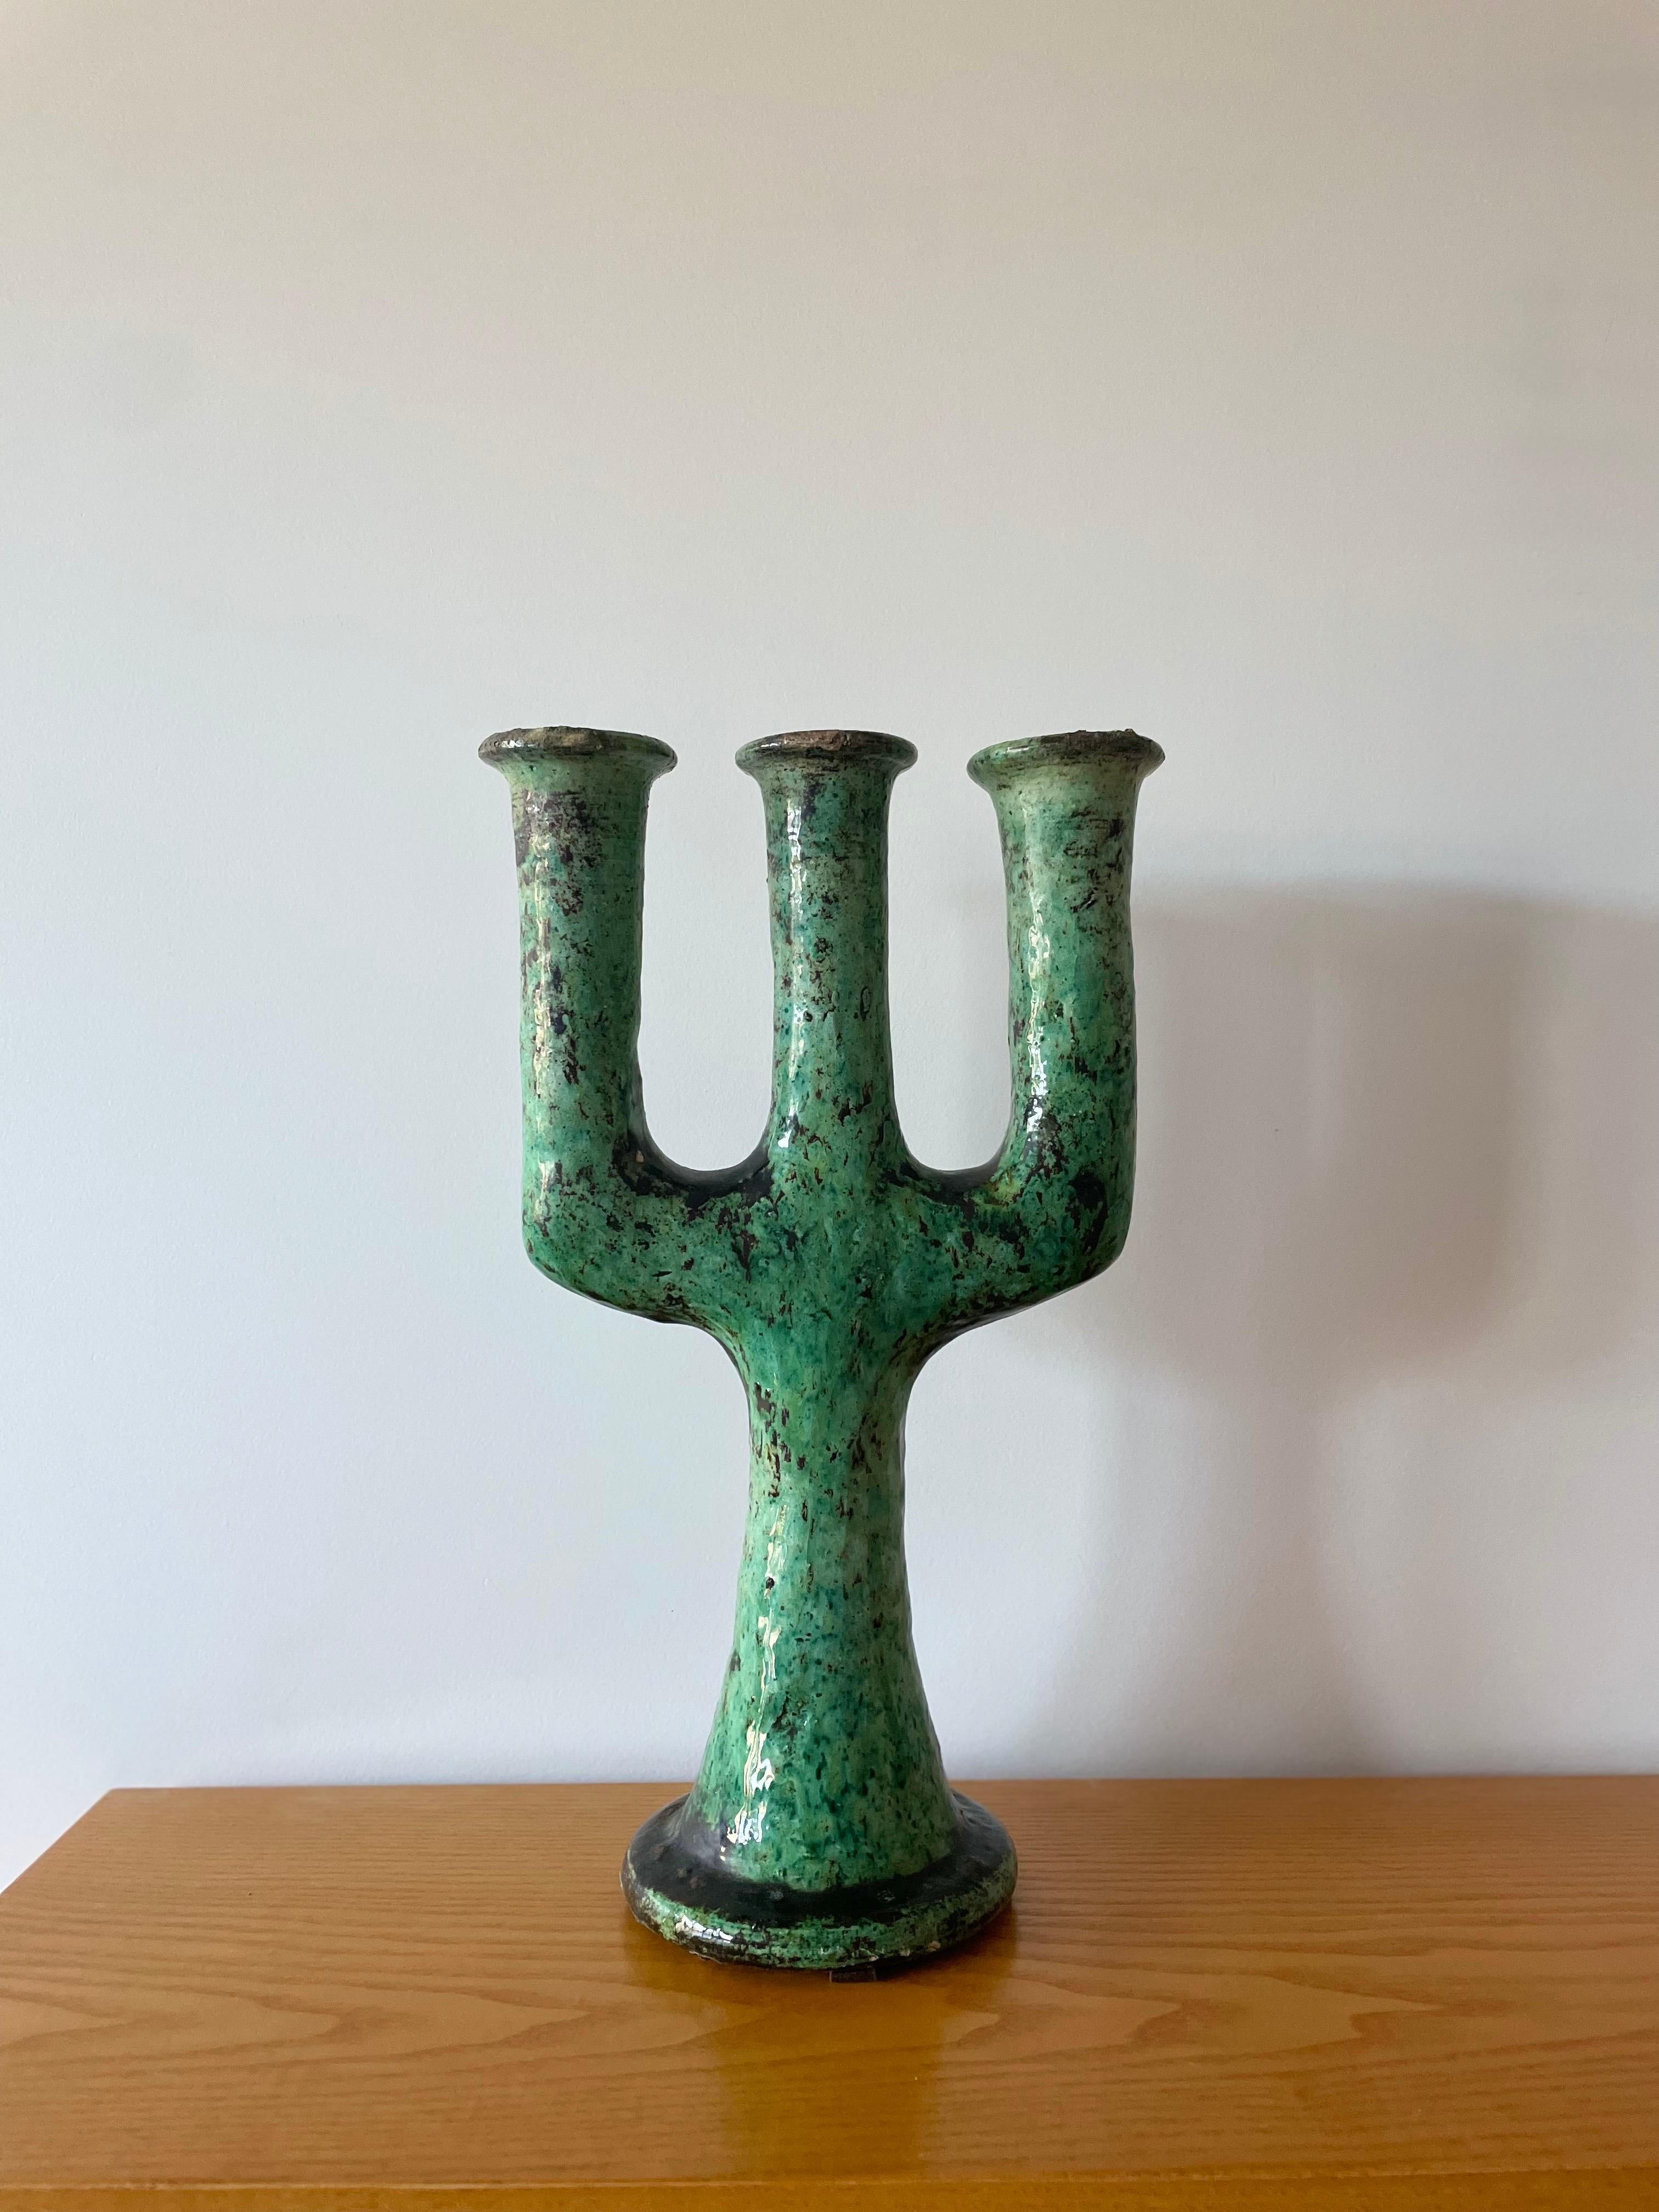 Marokkanischer Tamegroute-Keramik-Kerzenleuchter im Stil von Giacometti

Dieser handgefertigte, grün emaillierte Vintage-Kerzenhalter ist eine reine Skulptur aus dem südmarokkanischen Dorf Tamegroute, wo geschickte Töpfer lokale Techniken